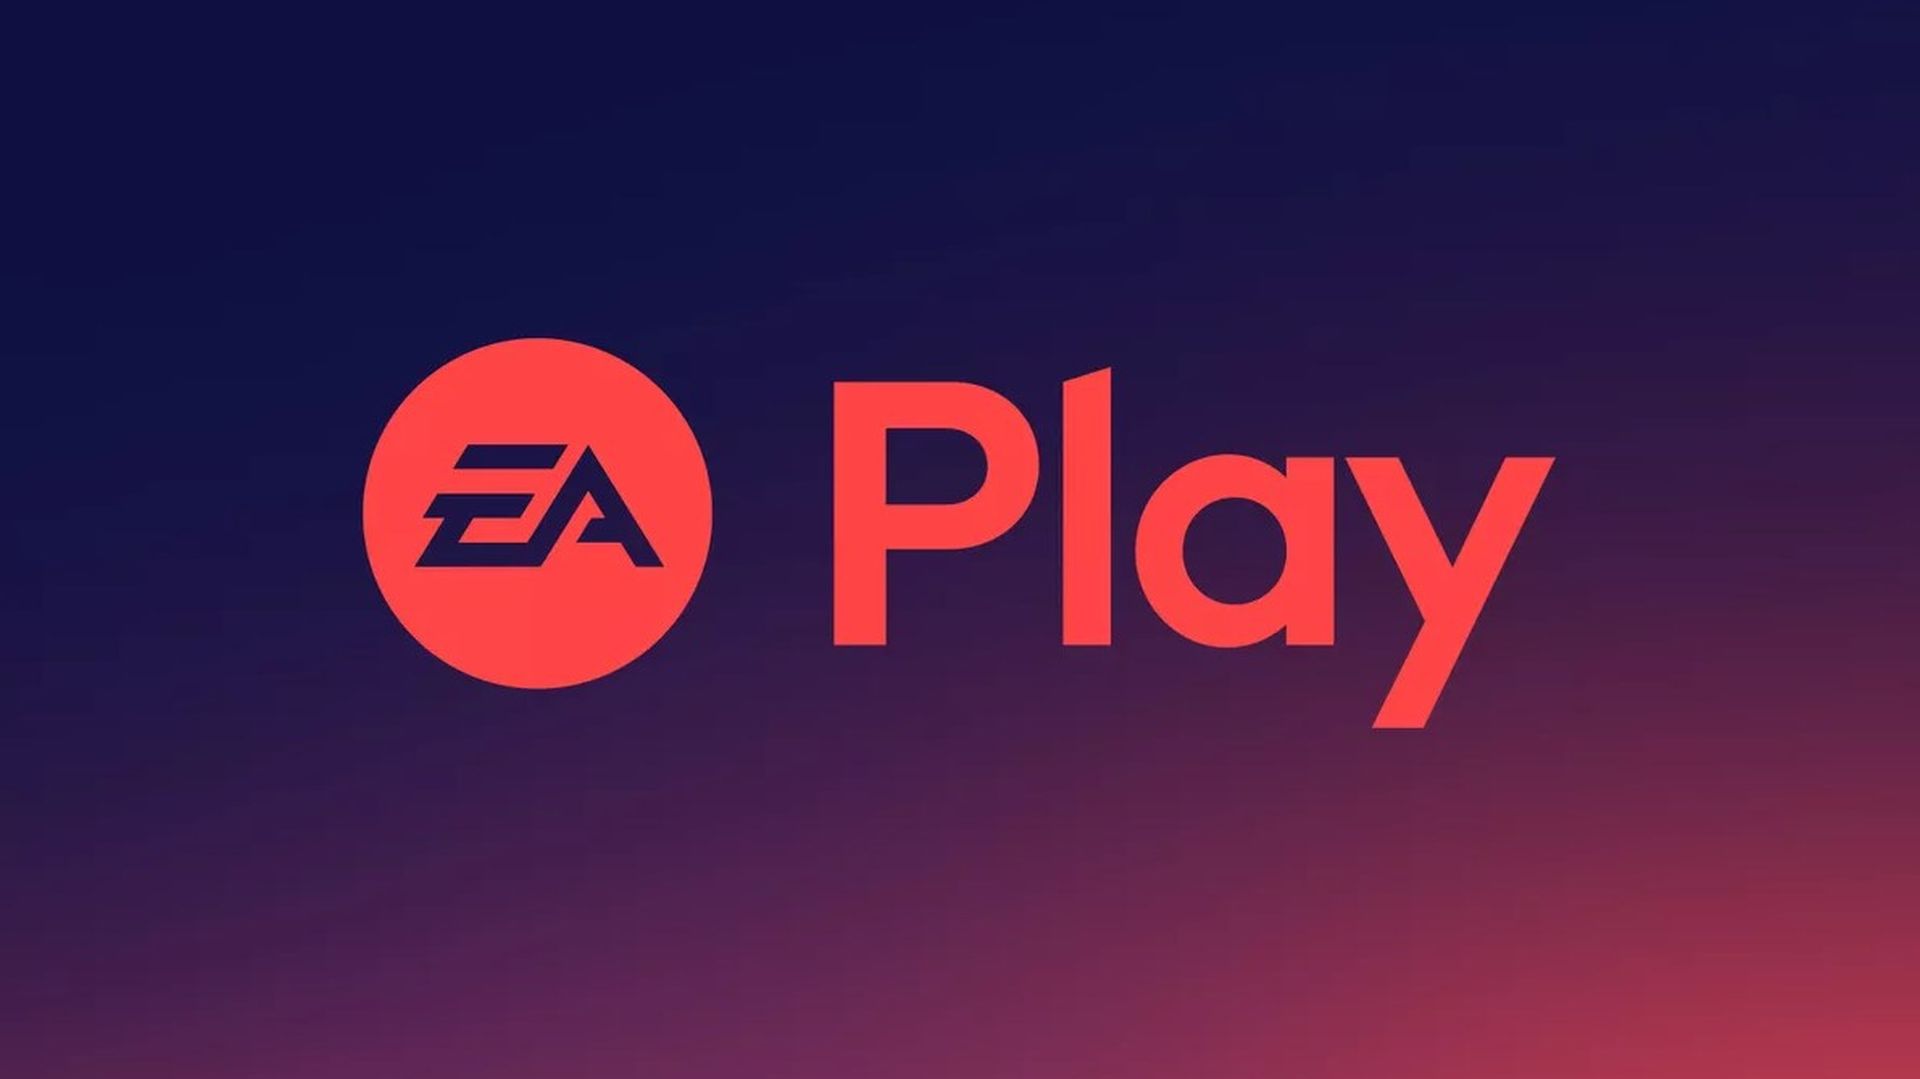 Ea Play er nu tilgængeligt direkte på Steam